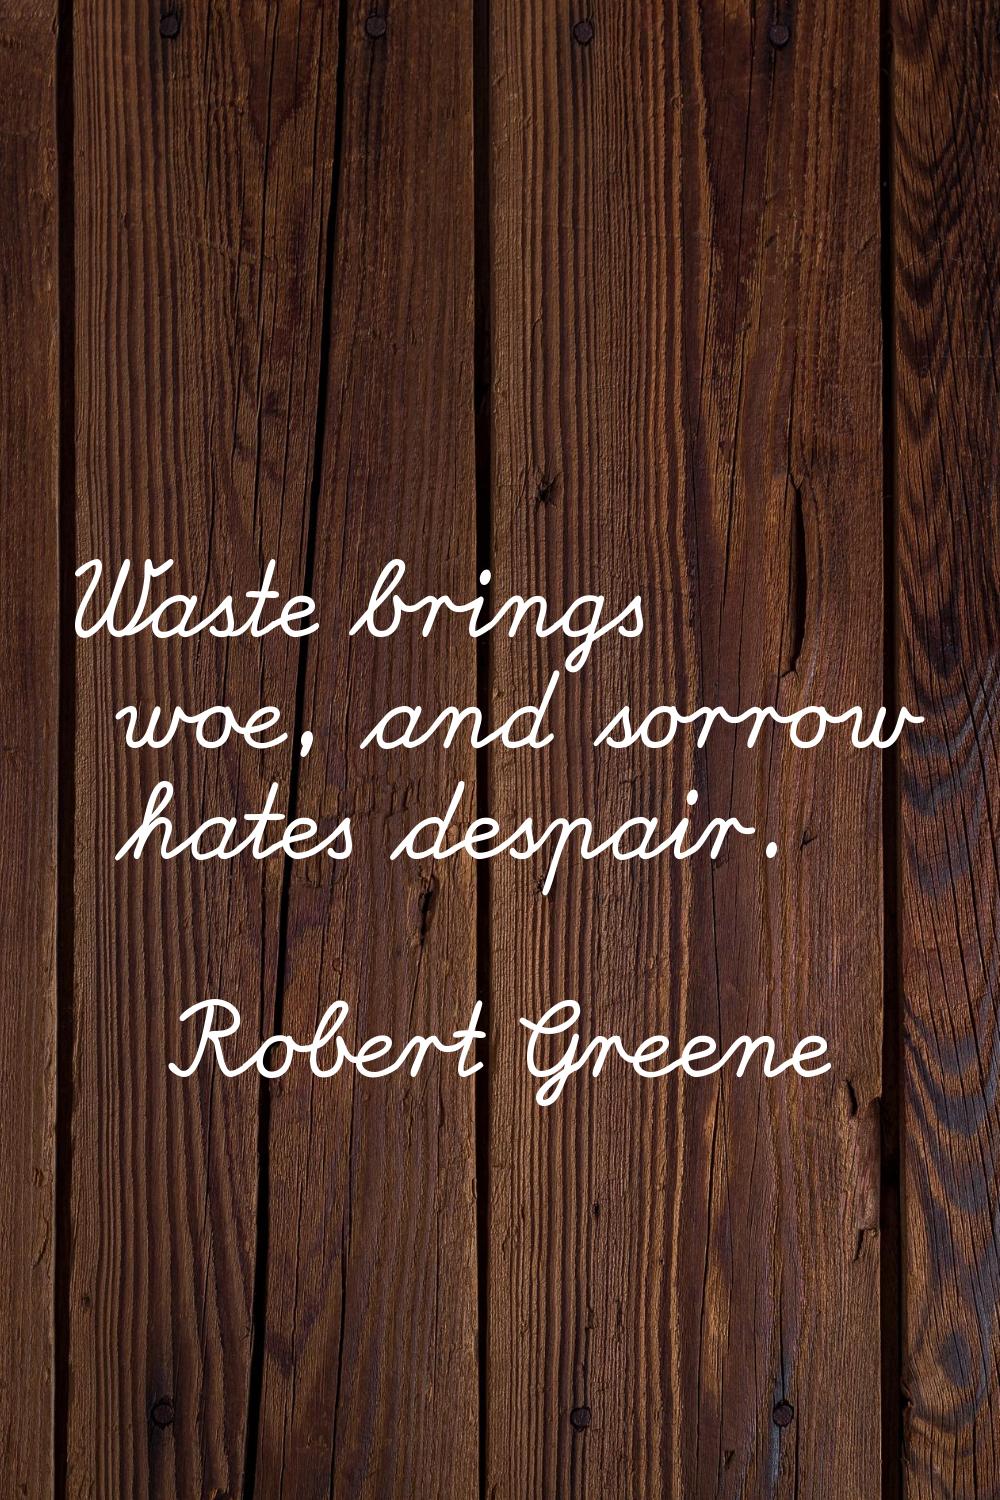 Waste brings woe, and sorrow hates despair.